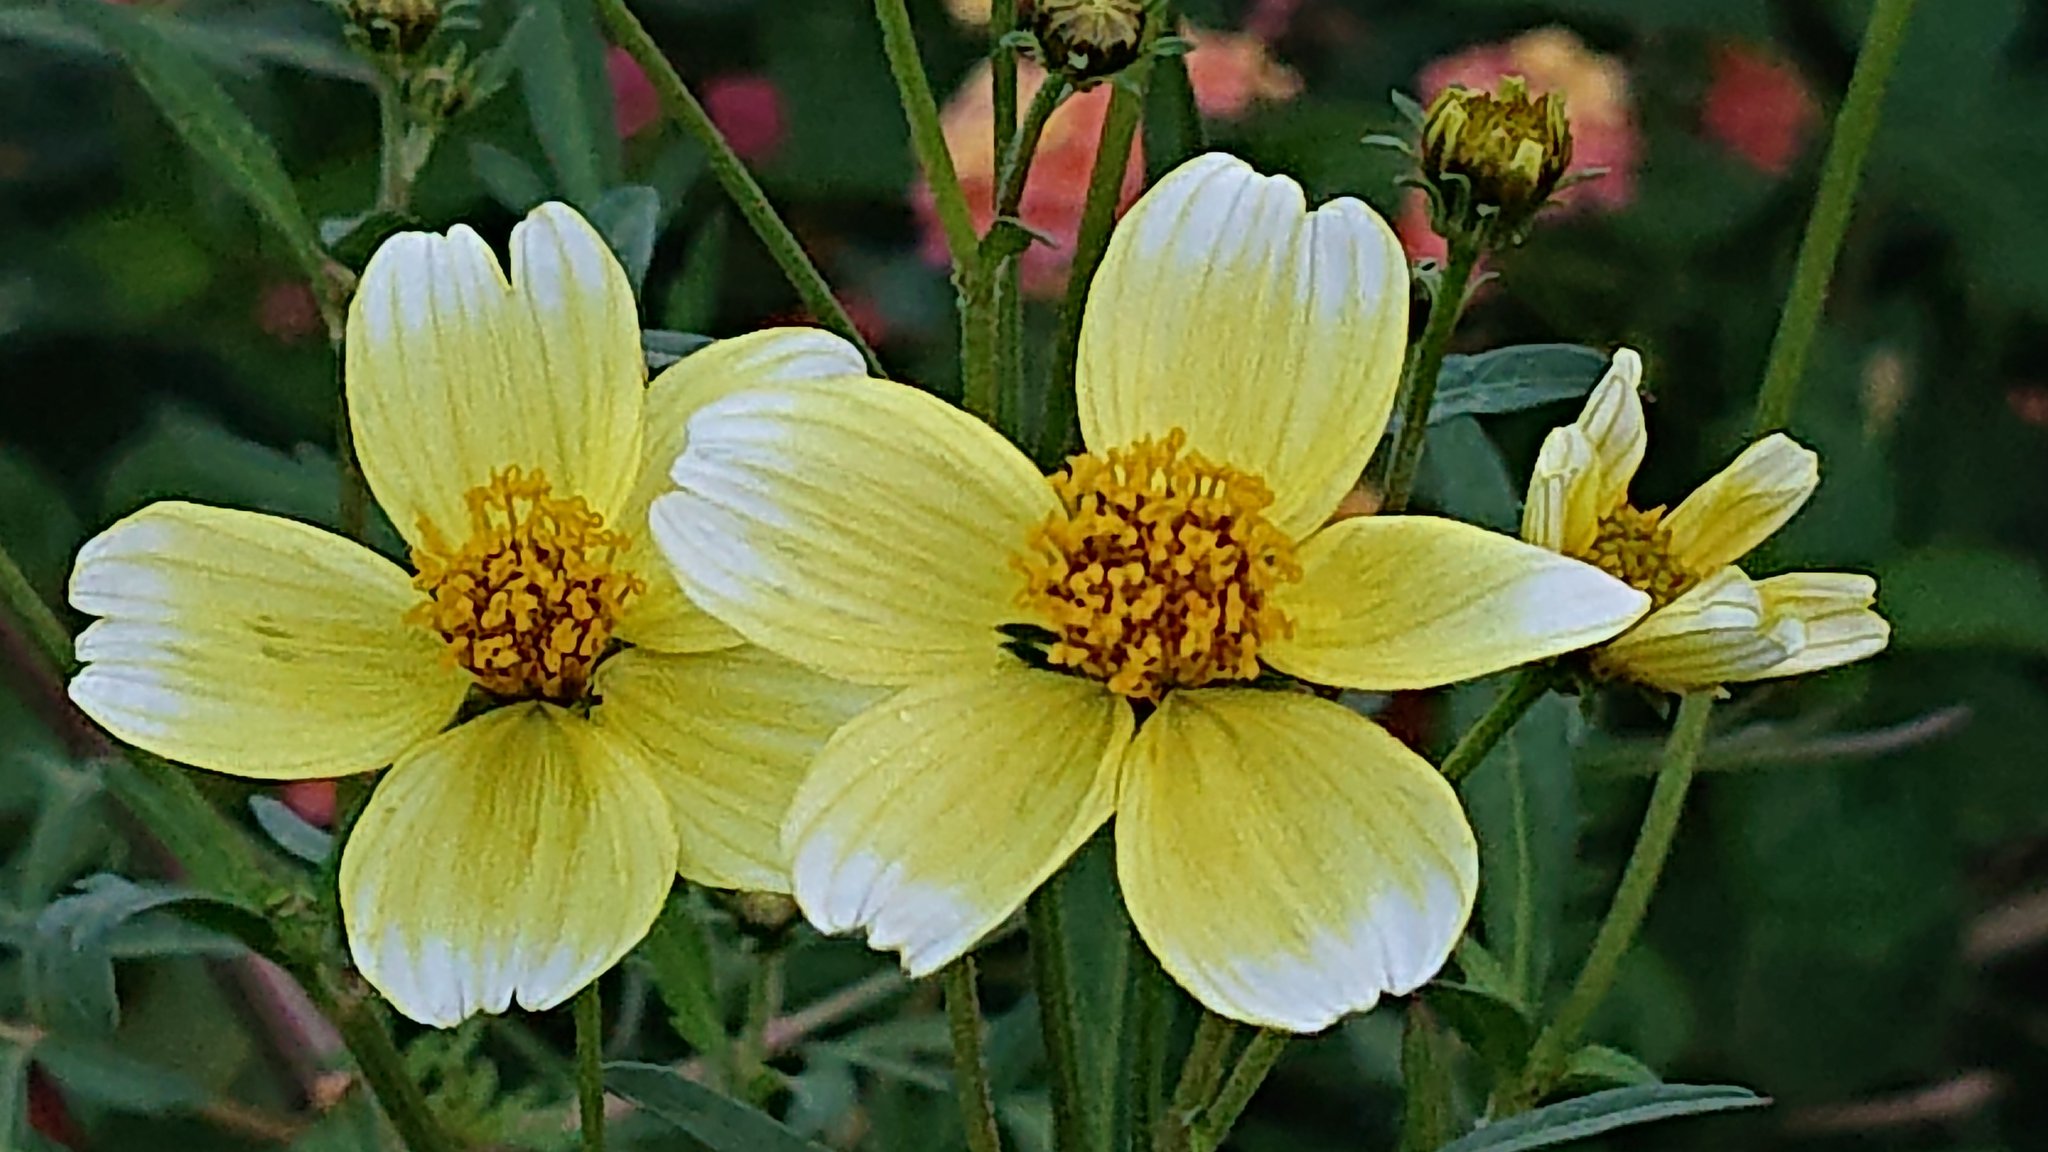 Satochan ウインターコスモス ヒデンス キク科 黄 白 ピンク 10 12月 コスモスに似た花が 秋から冬に開花するのが由来 でも コスモスの仲間ではありません 我が家に黄と白のウインターコスモスが咲きました 背丈がよく